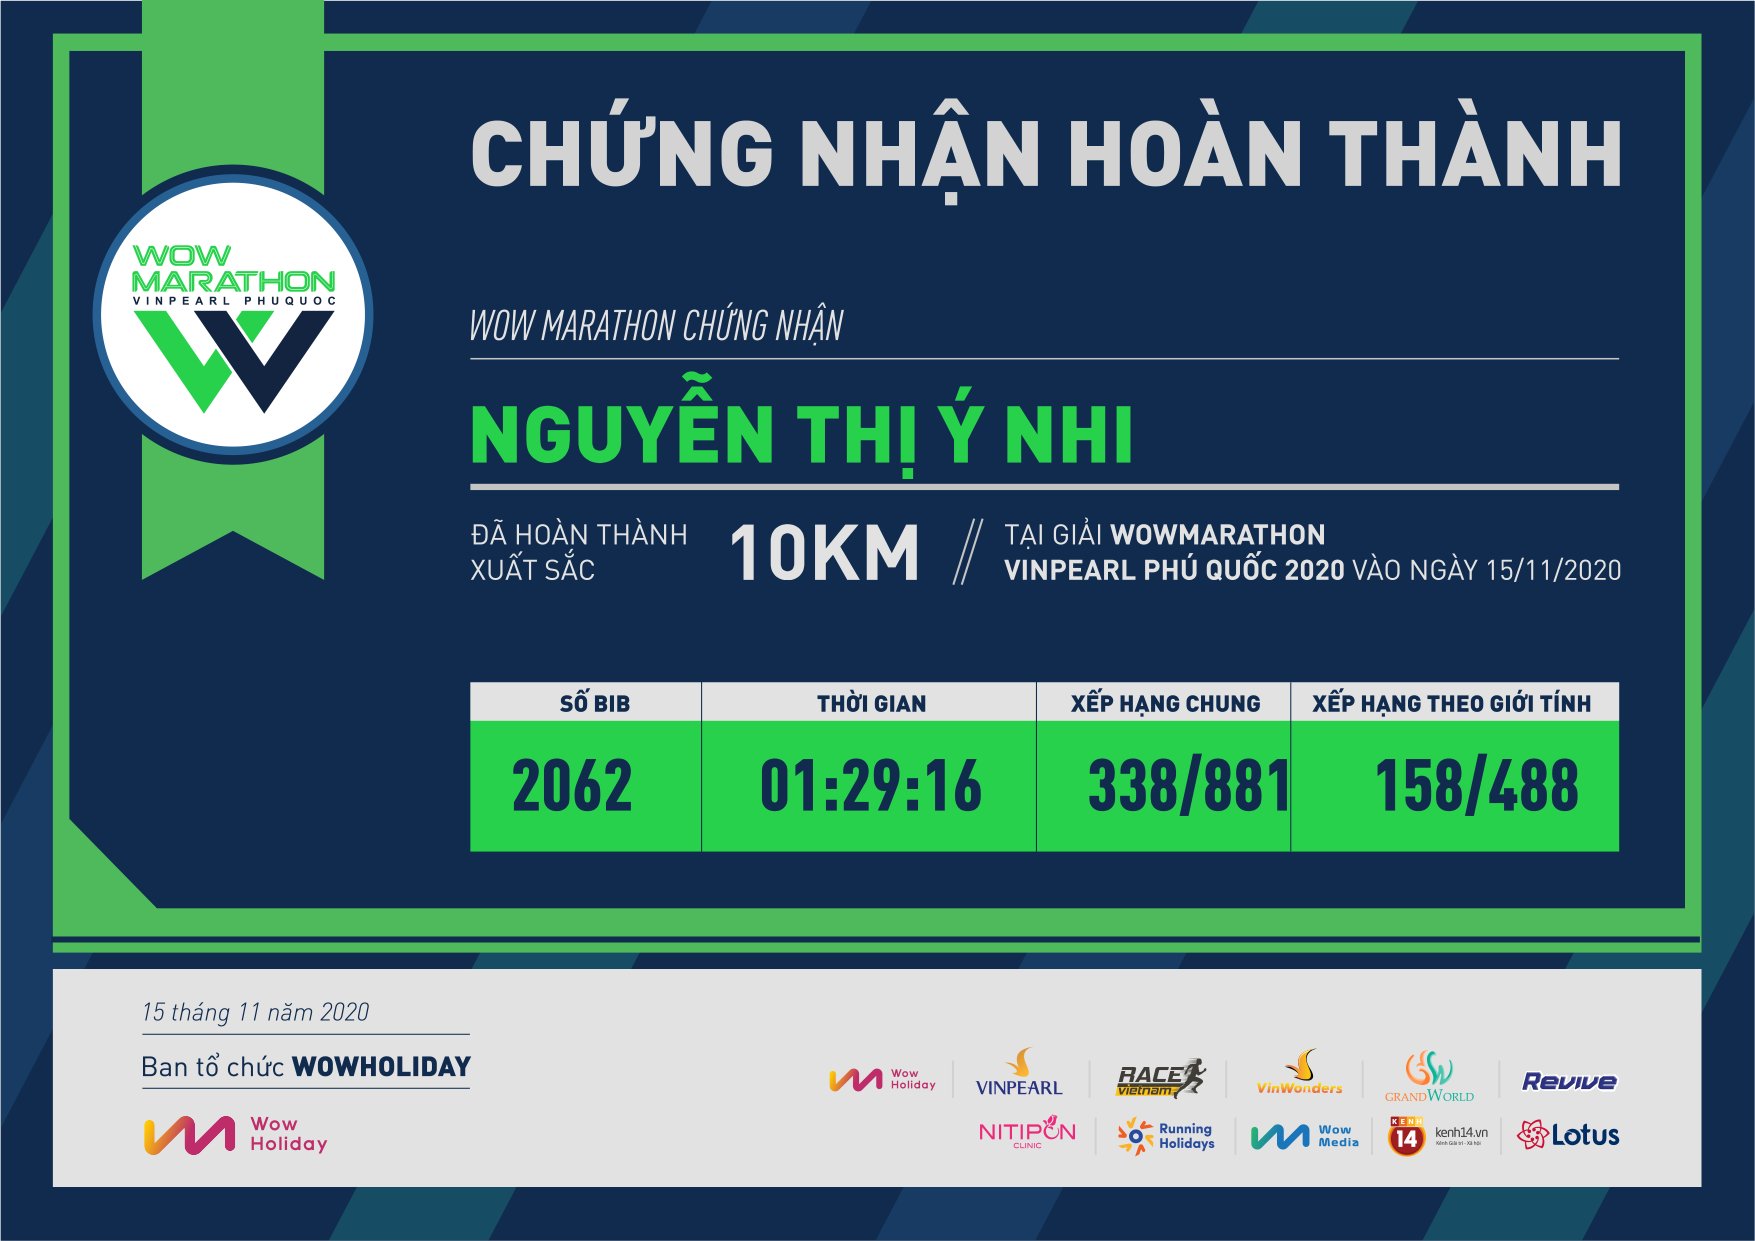 2062 - Nguyễn Thị Ý Nhi